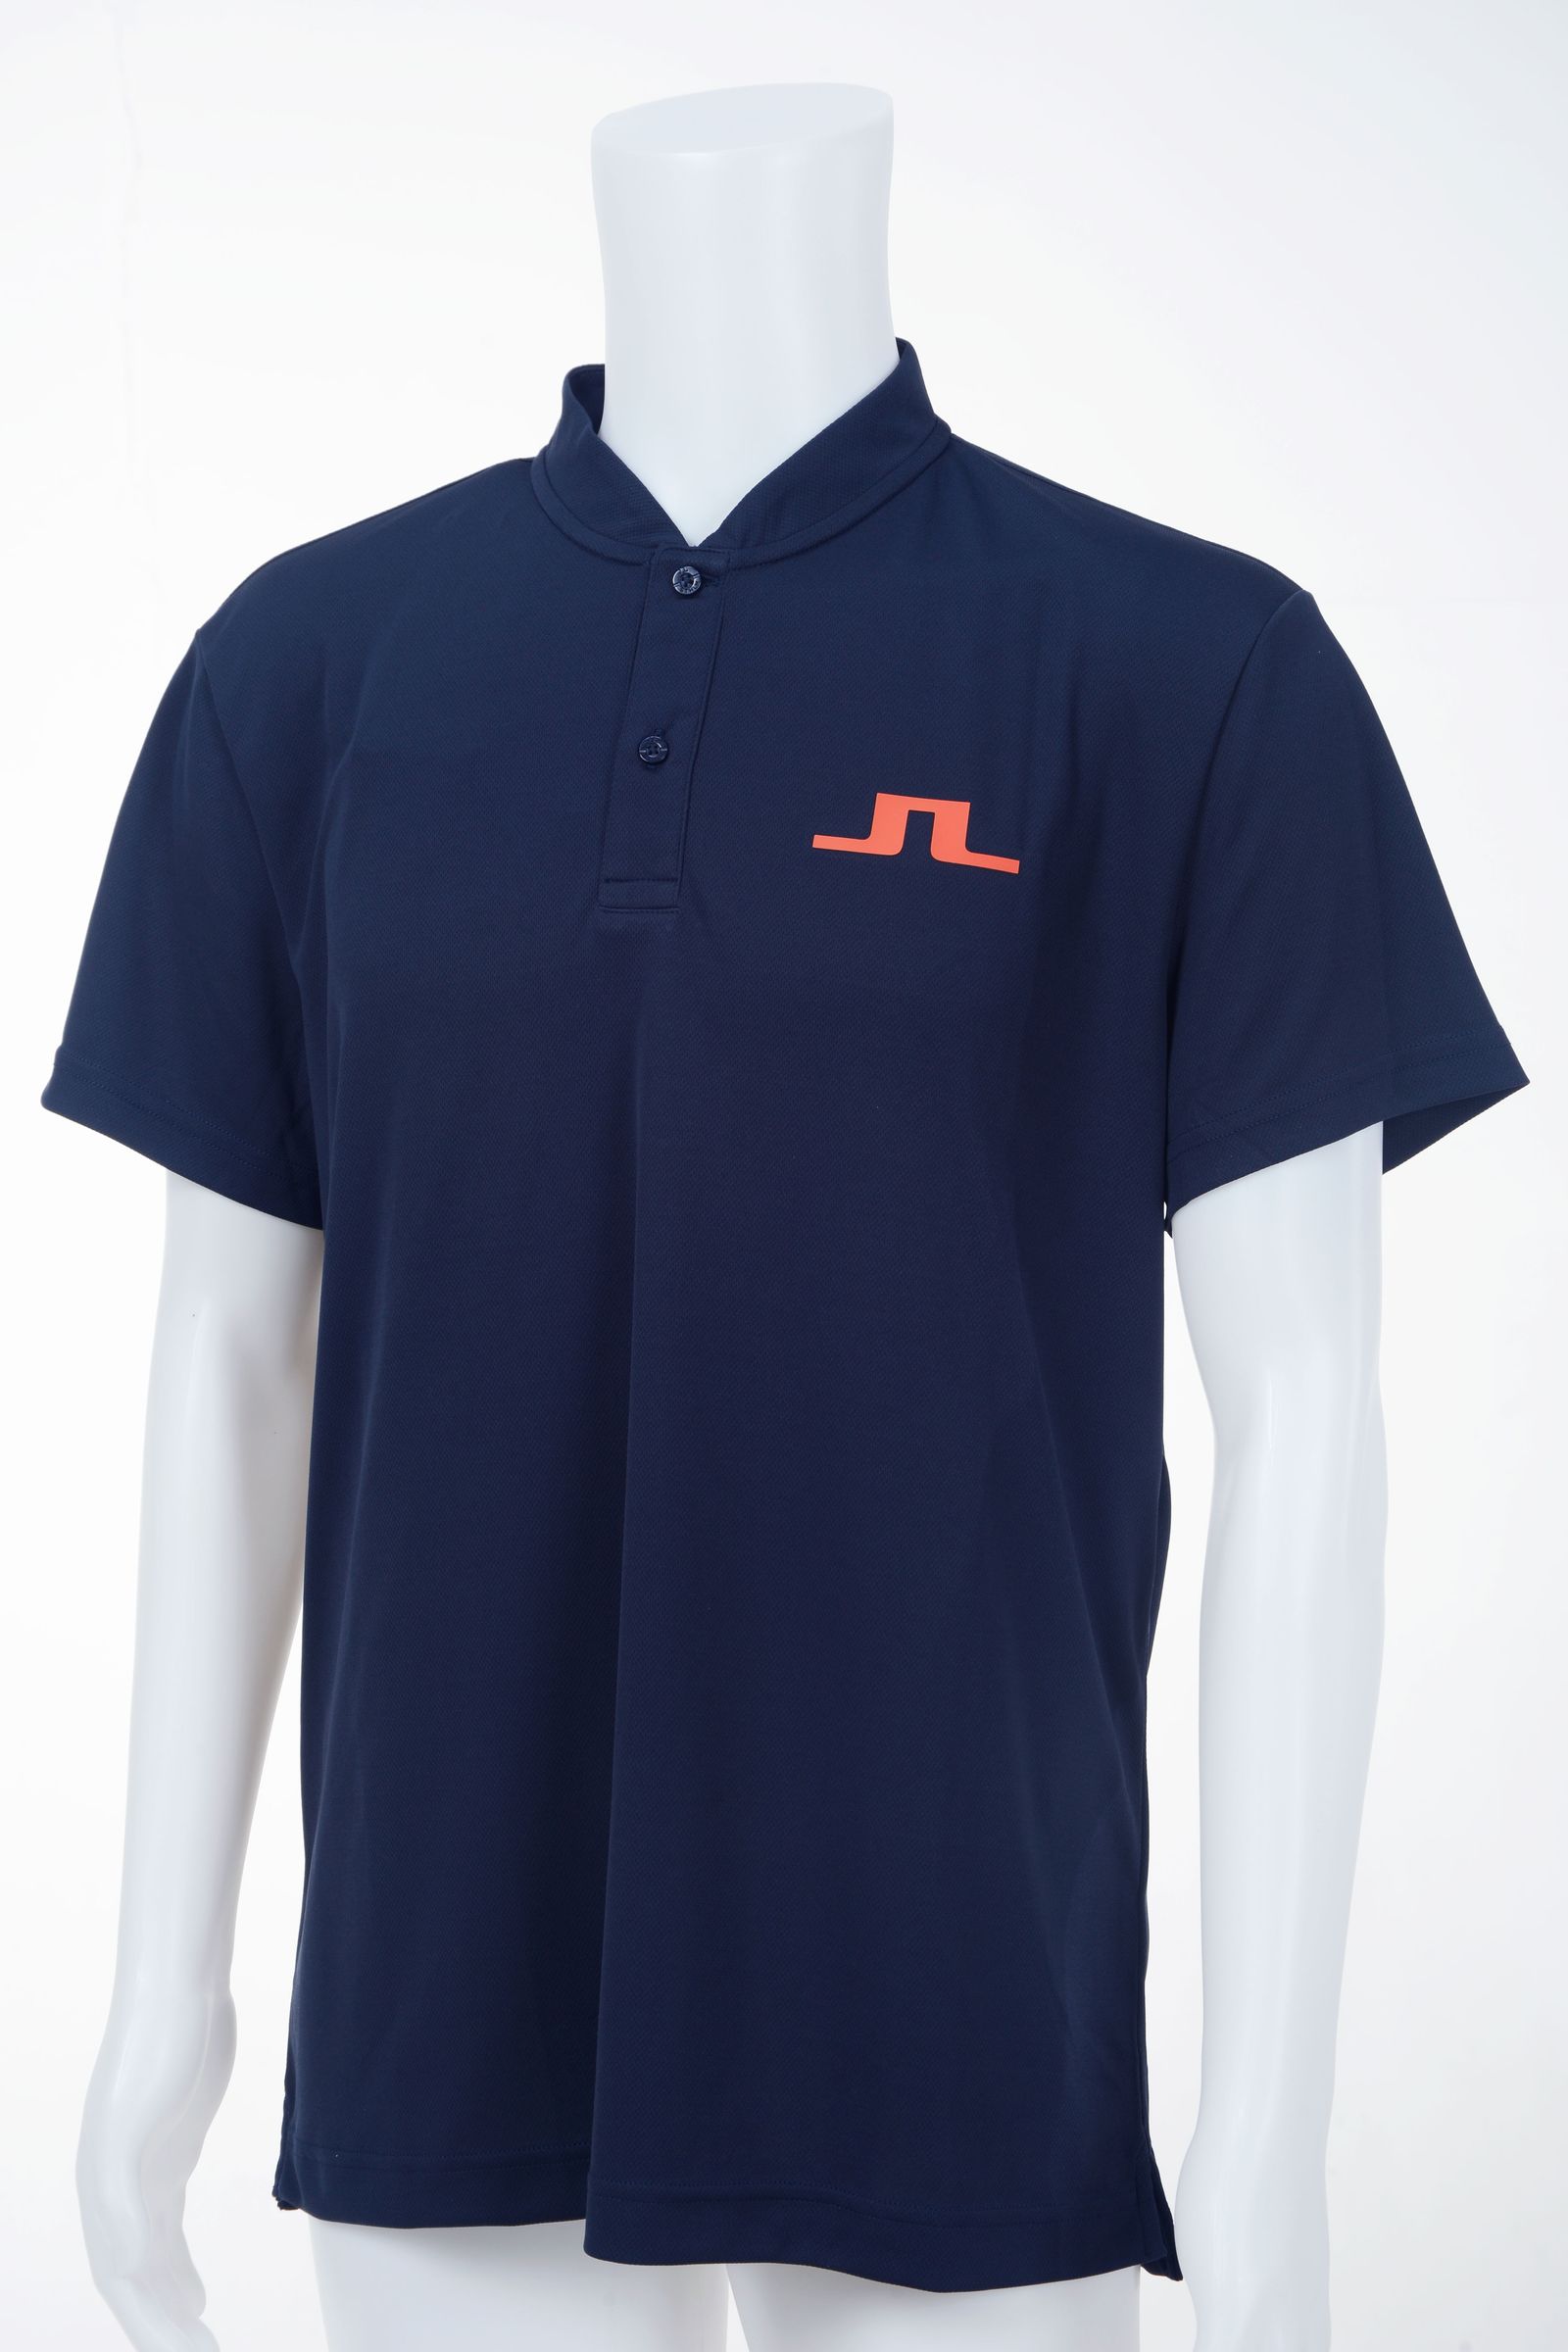 J.LINDEBERG - ブリッジマークプリントポロ | ポロシャツ | 半袖 